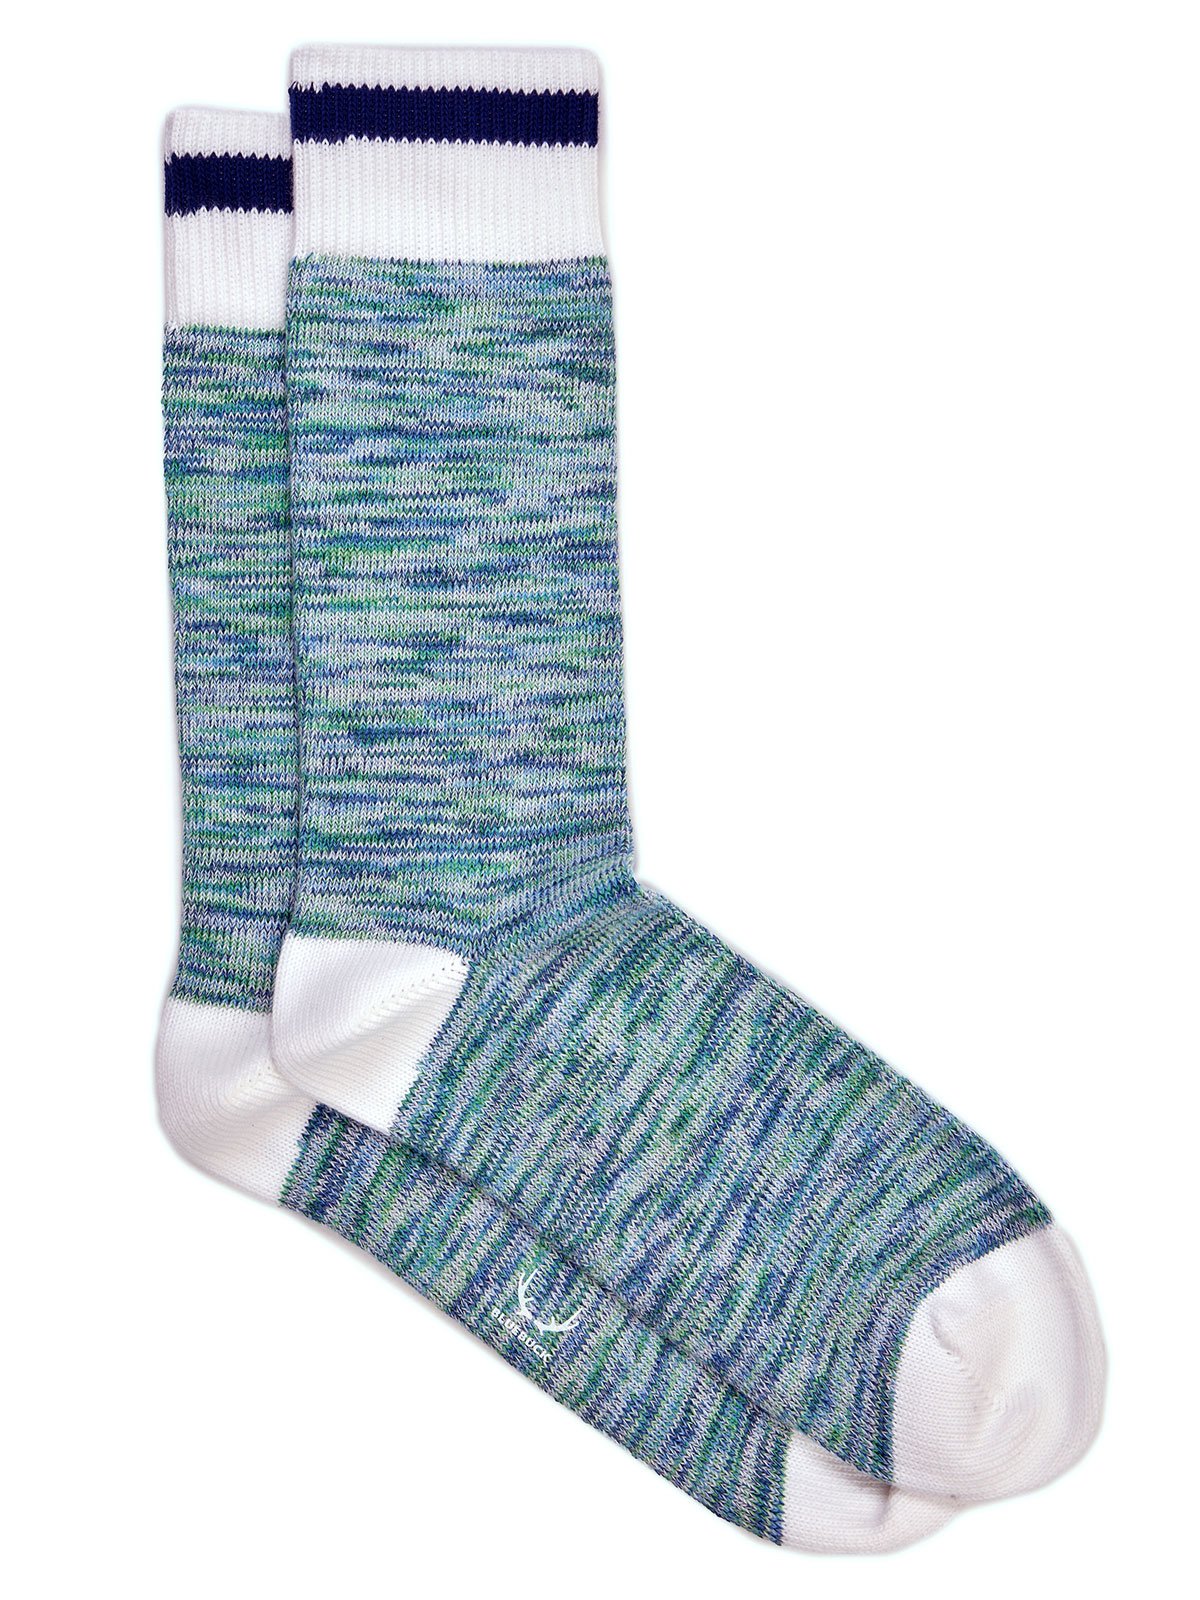 Nautical Socks | Green/Blue